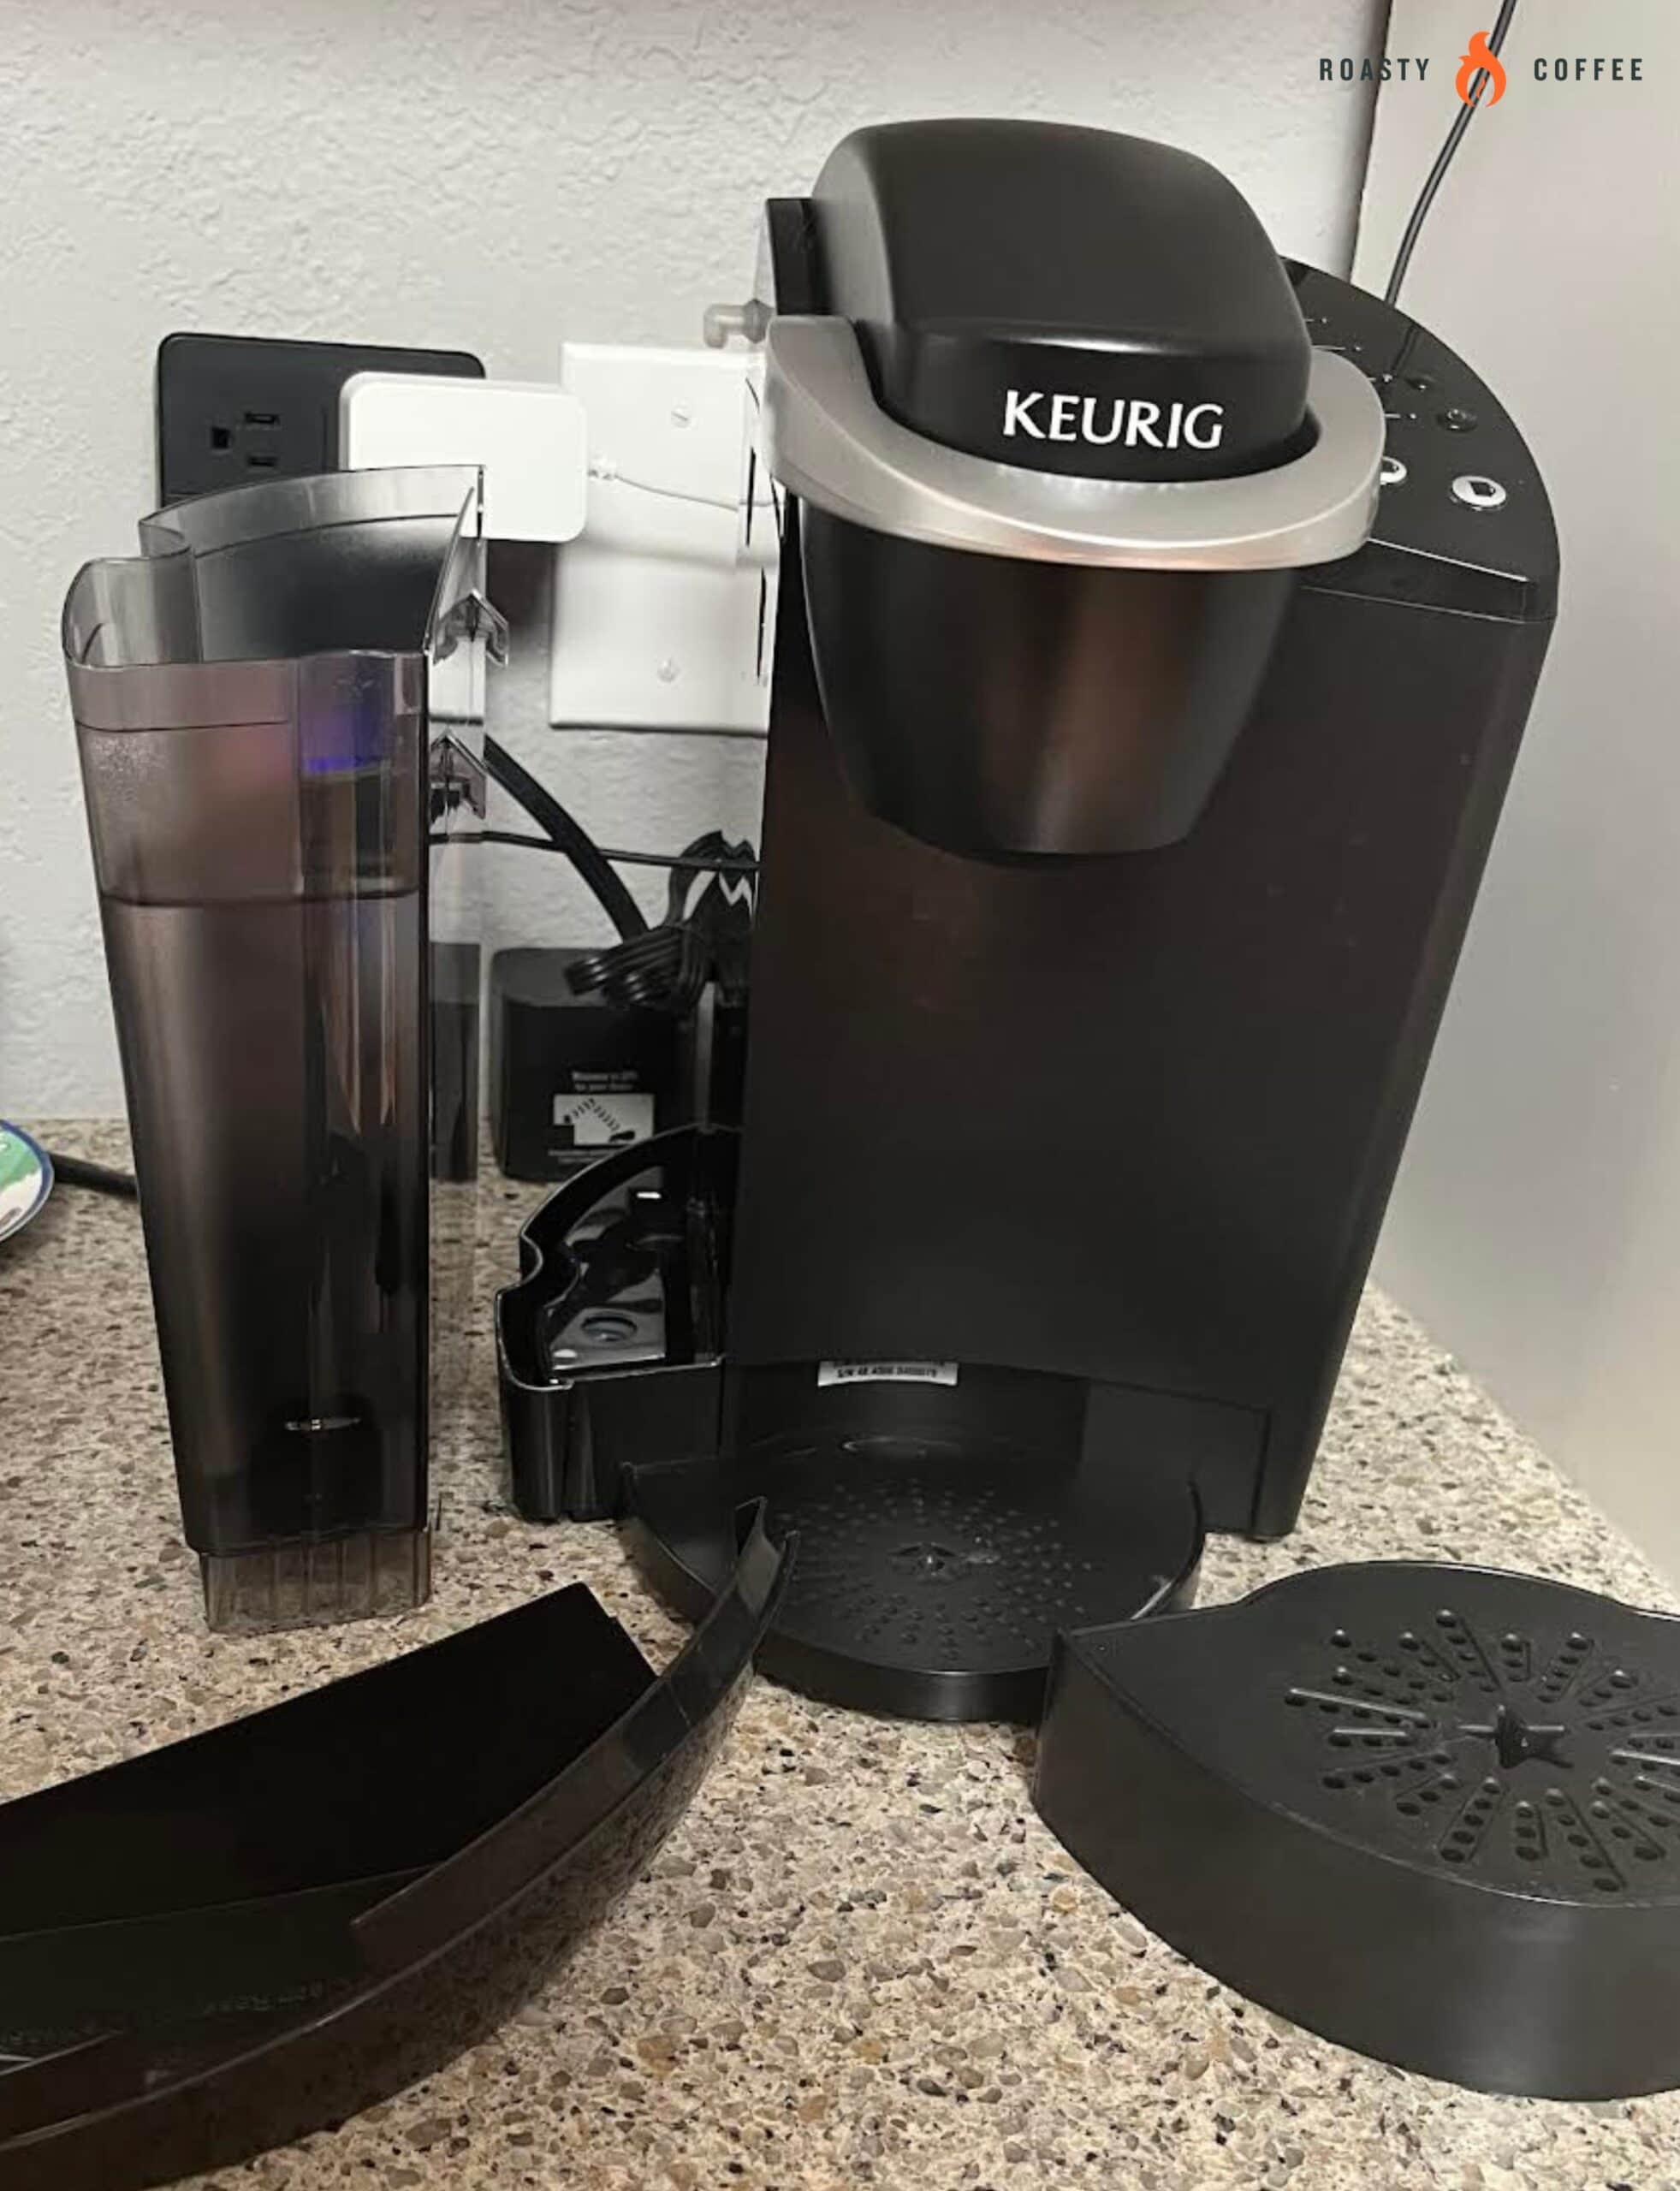 Problemas con la cafetera Keurig: su guía de solución